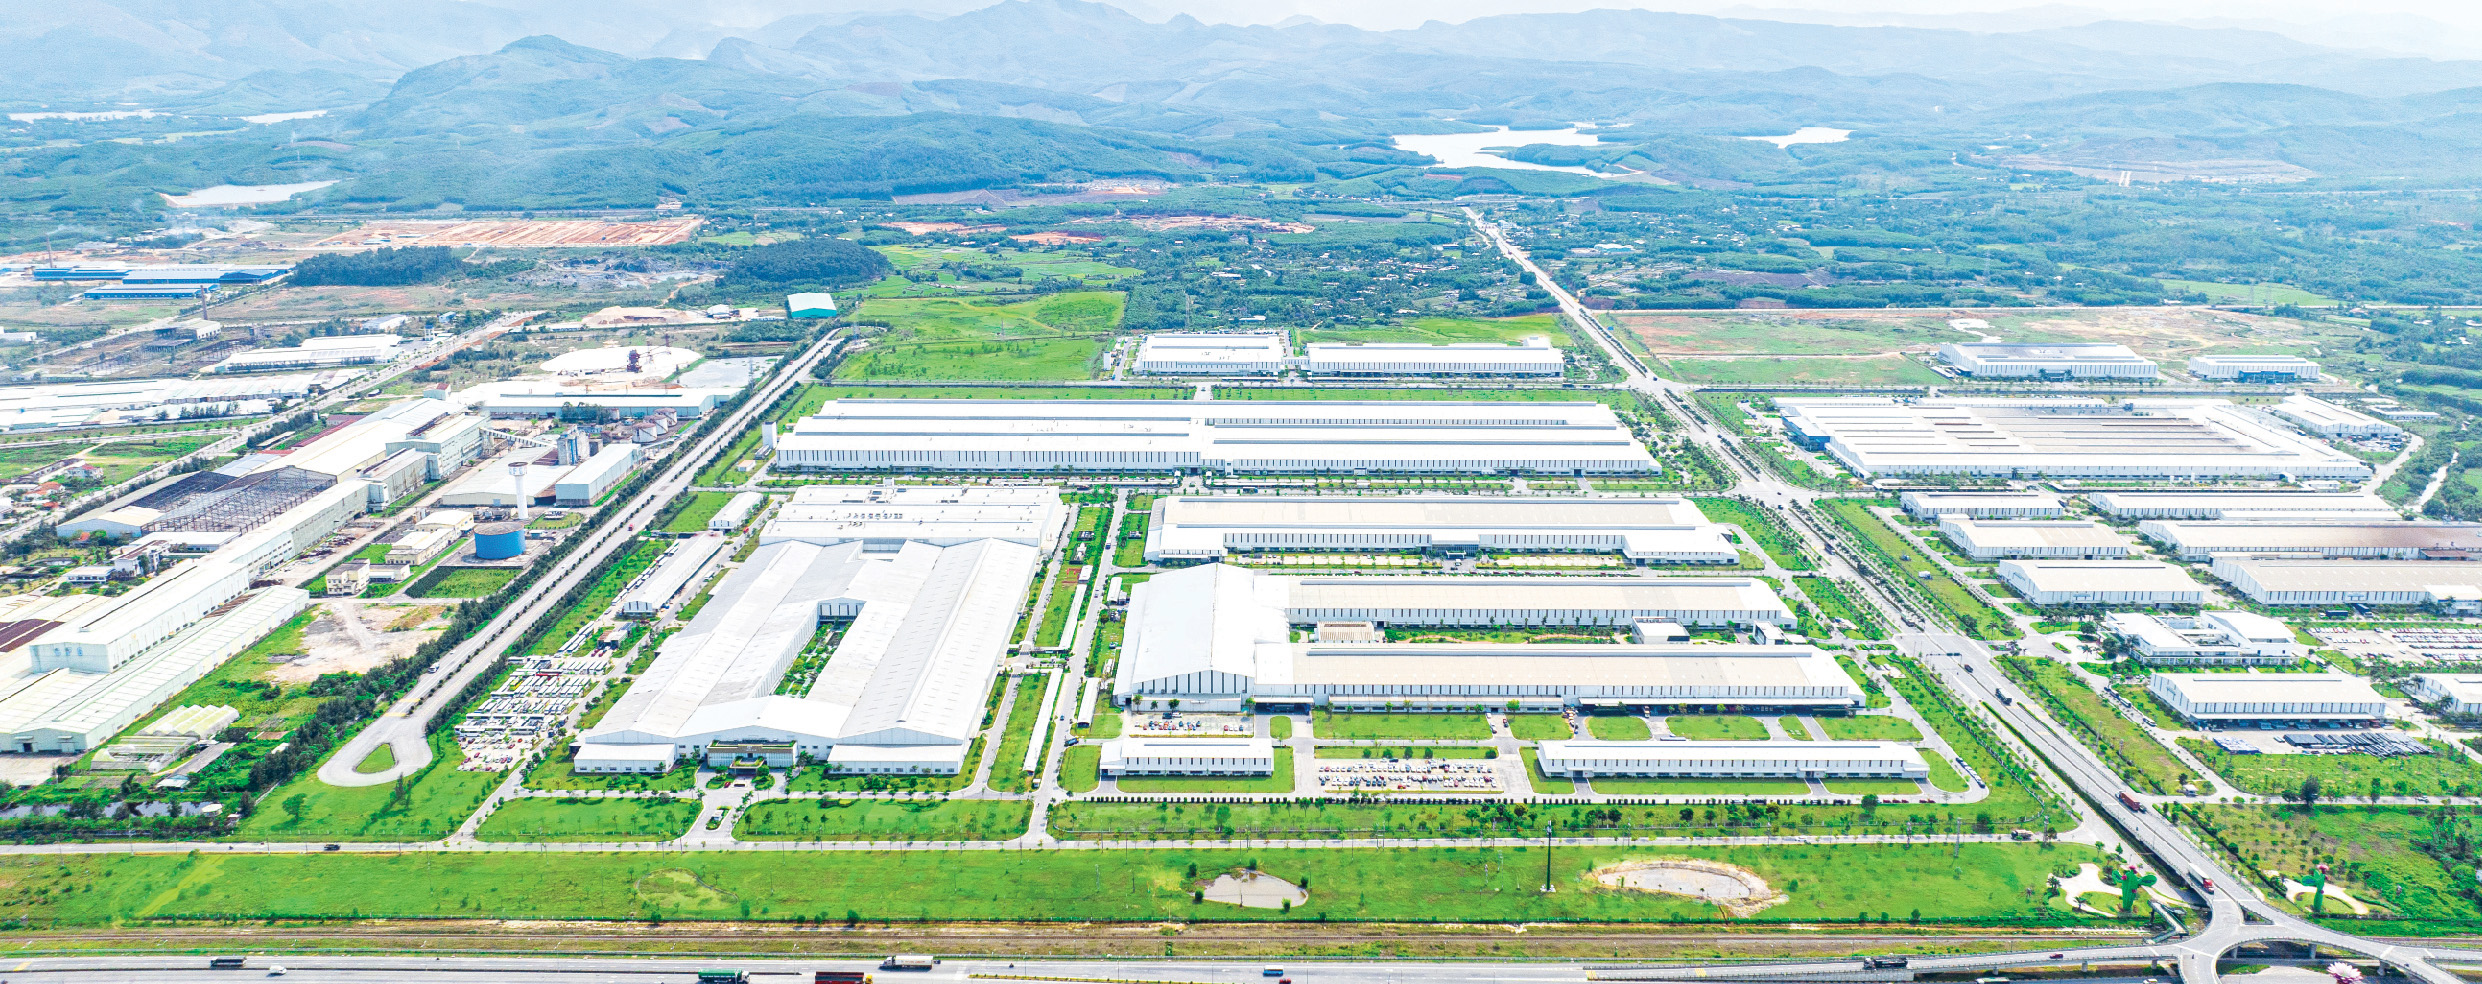 Từ “ước mơ” đến “Trung tâm” sản xuất lắp ráp ô tô quy mô nhất Đông Nam Á